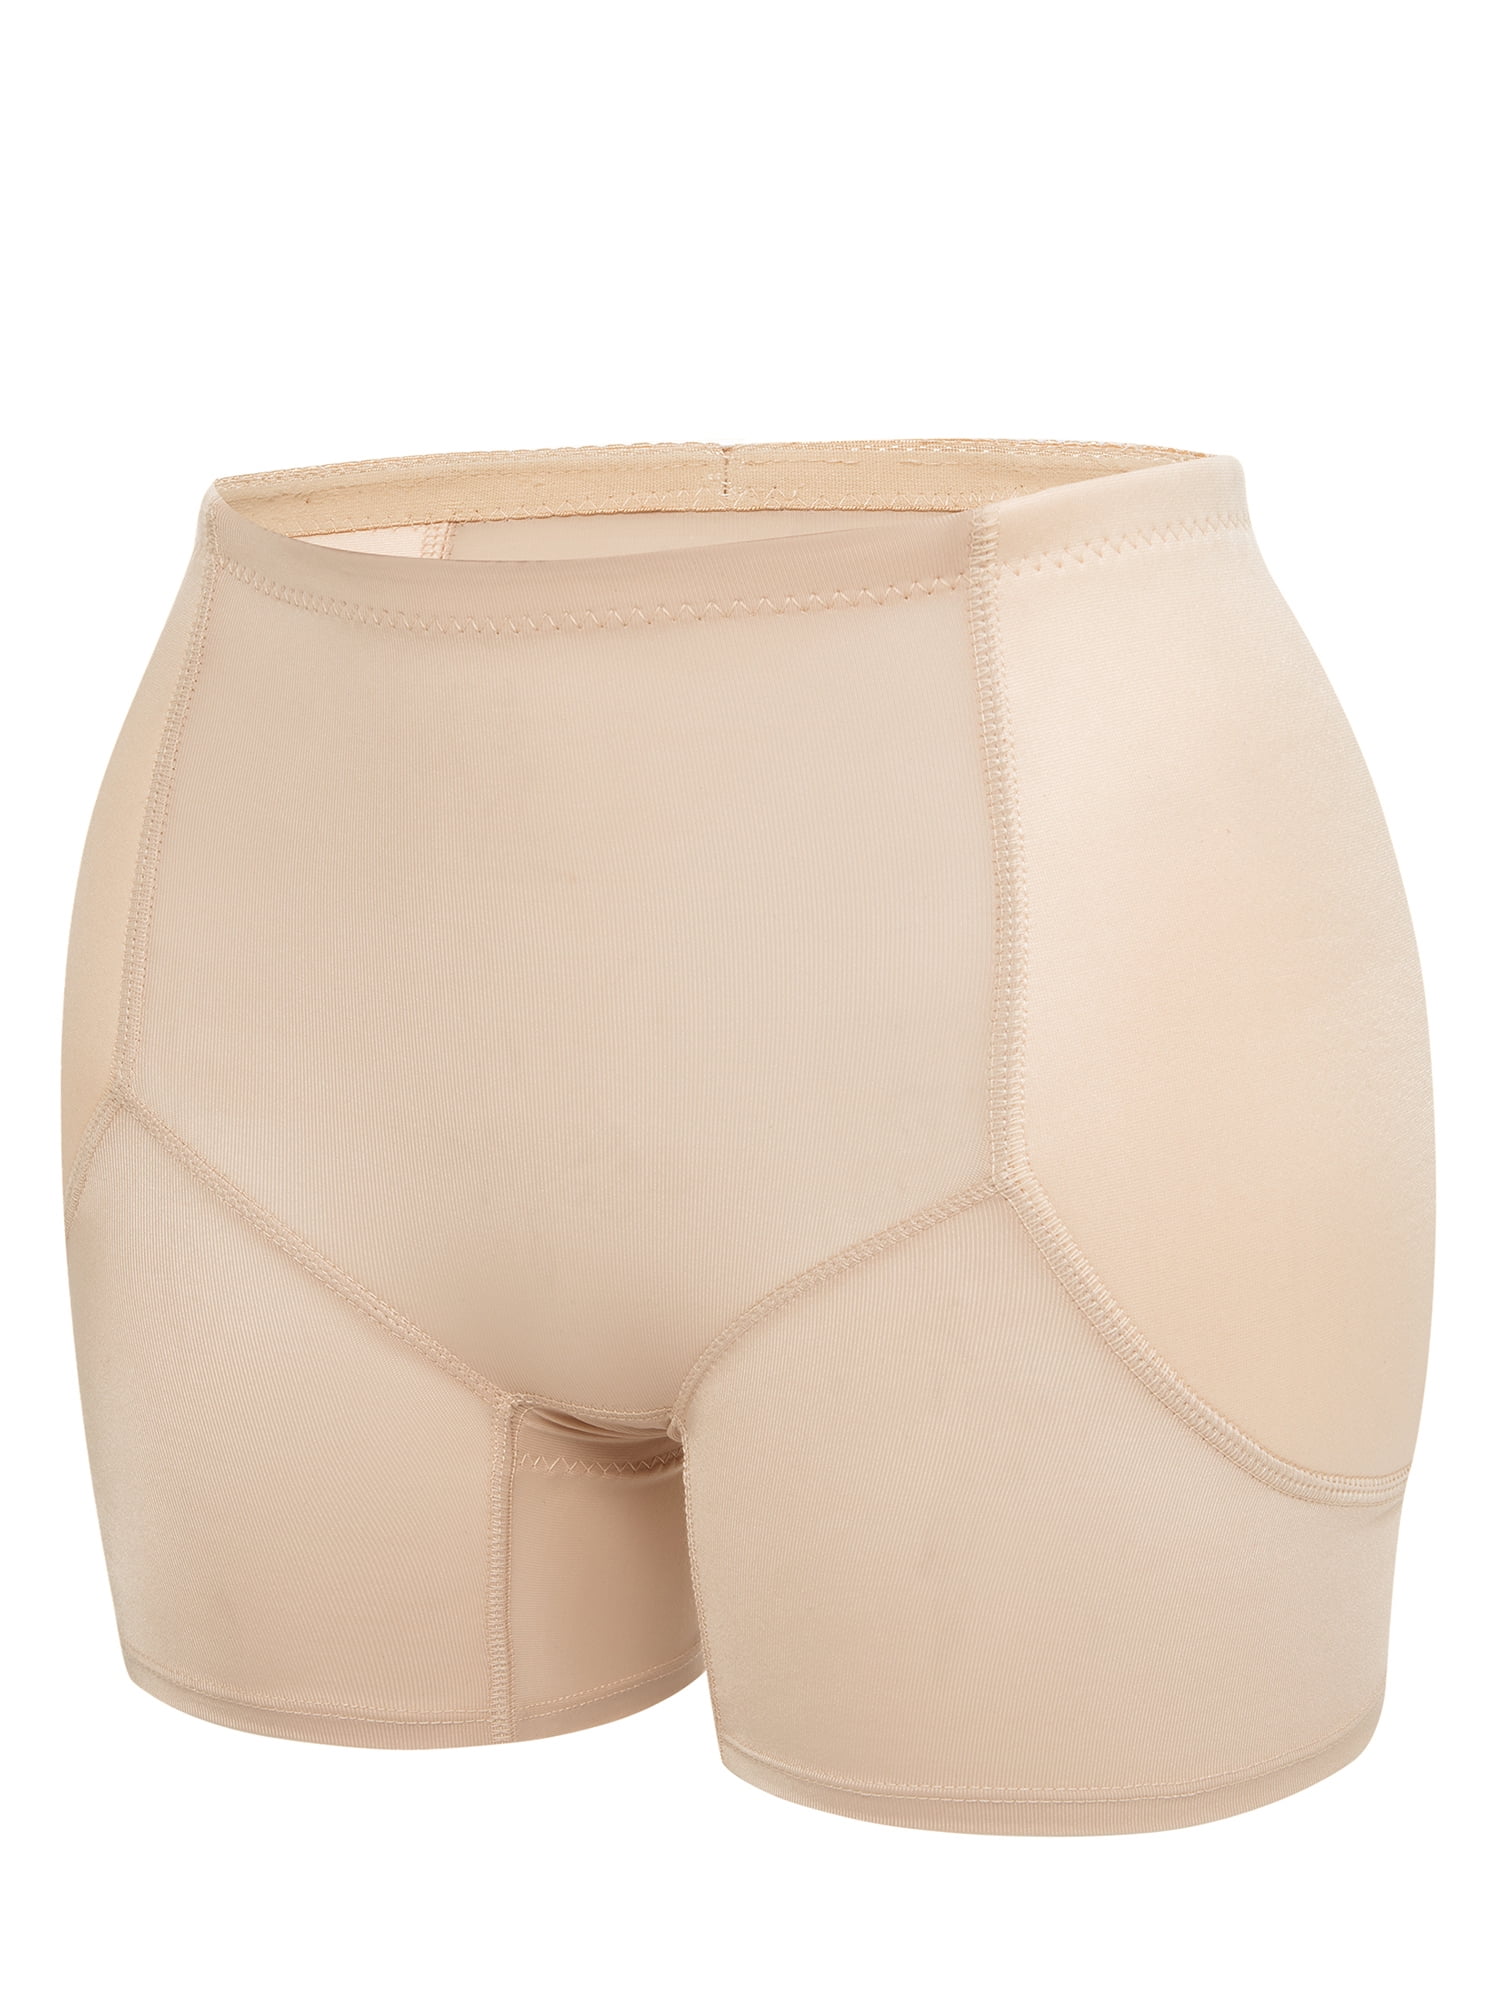 Garteder Women Shapewear Butt Lifter Plus Size PU Mesh Sexy Padded Butt  Booster Enhancing Hip Leather Shorts Underwear 